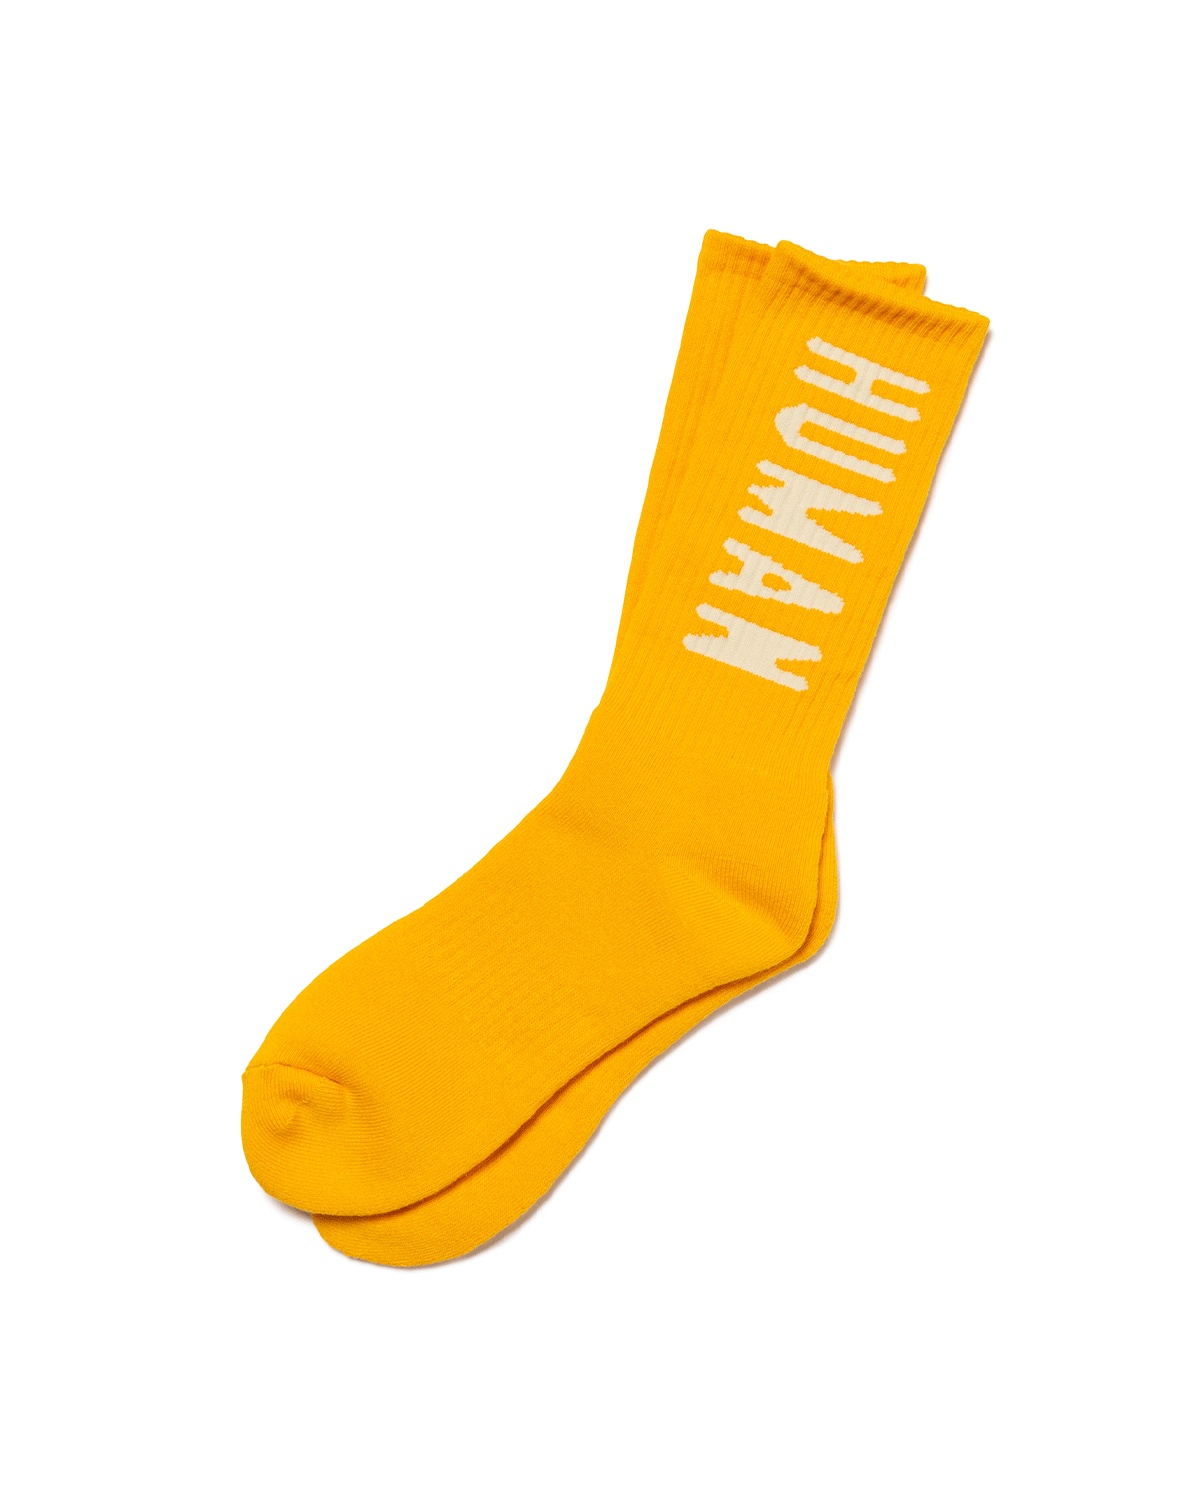 HM Logo Socks Yellow - 1